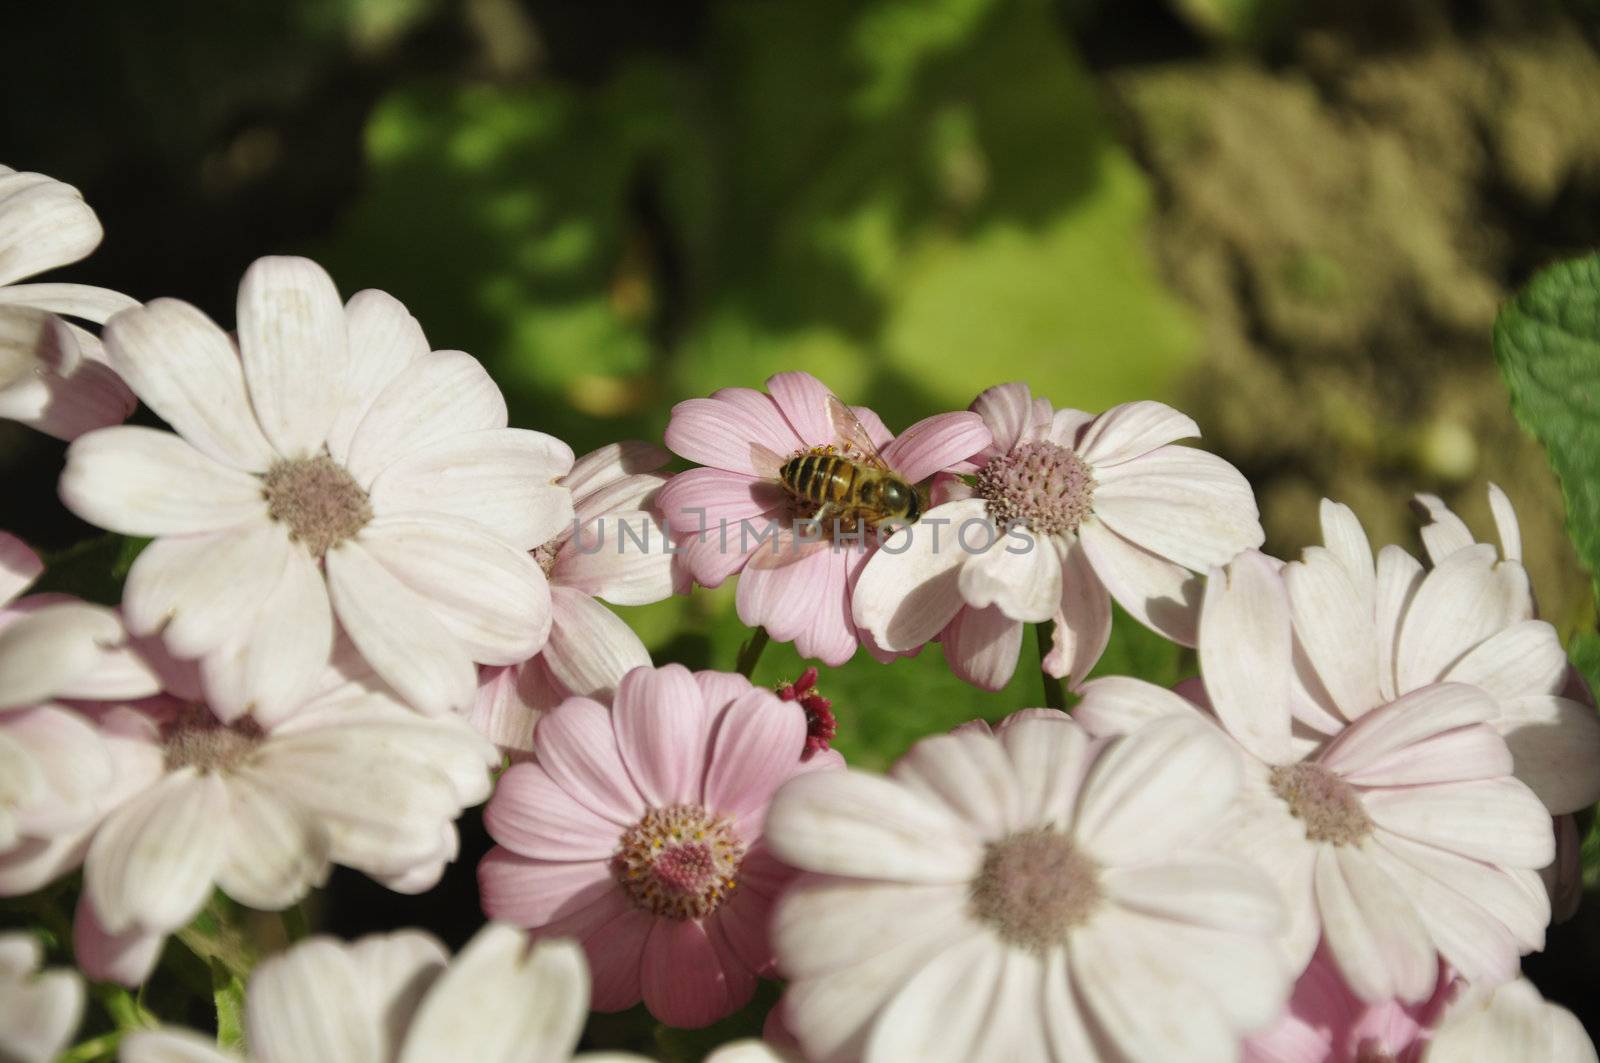 A Bee on a Pink Cineraria, Senecio hybridus in a Garden